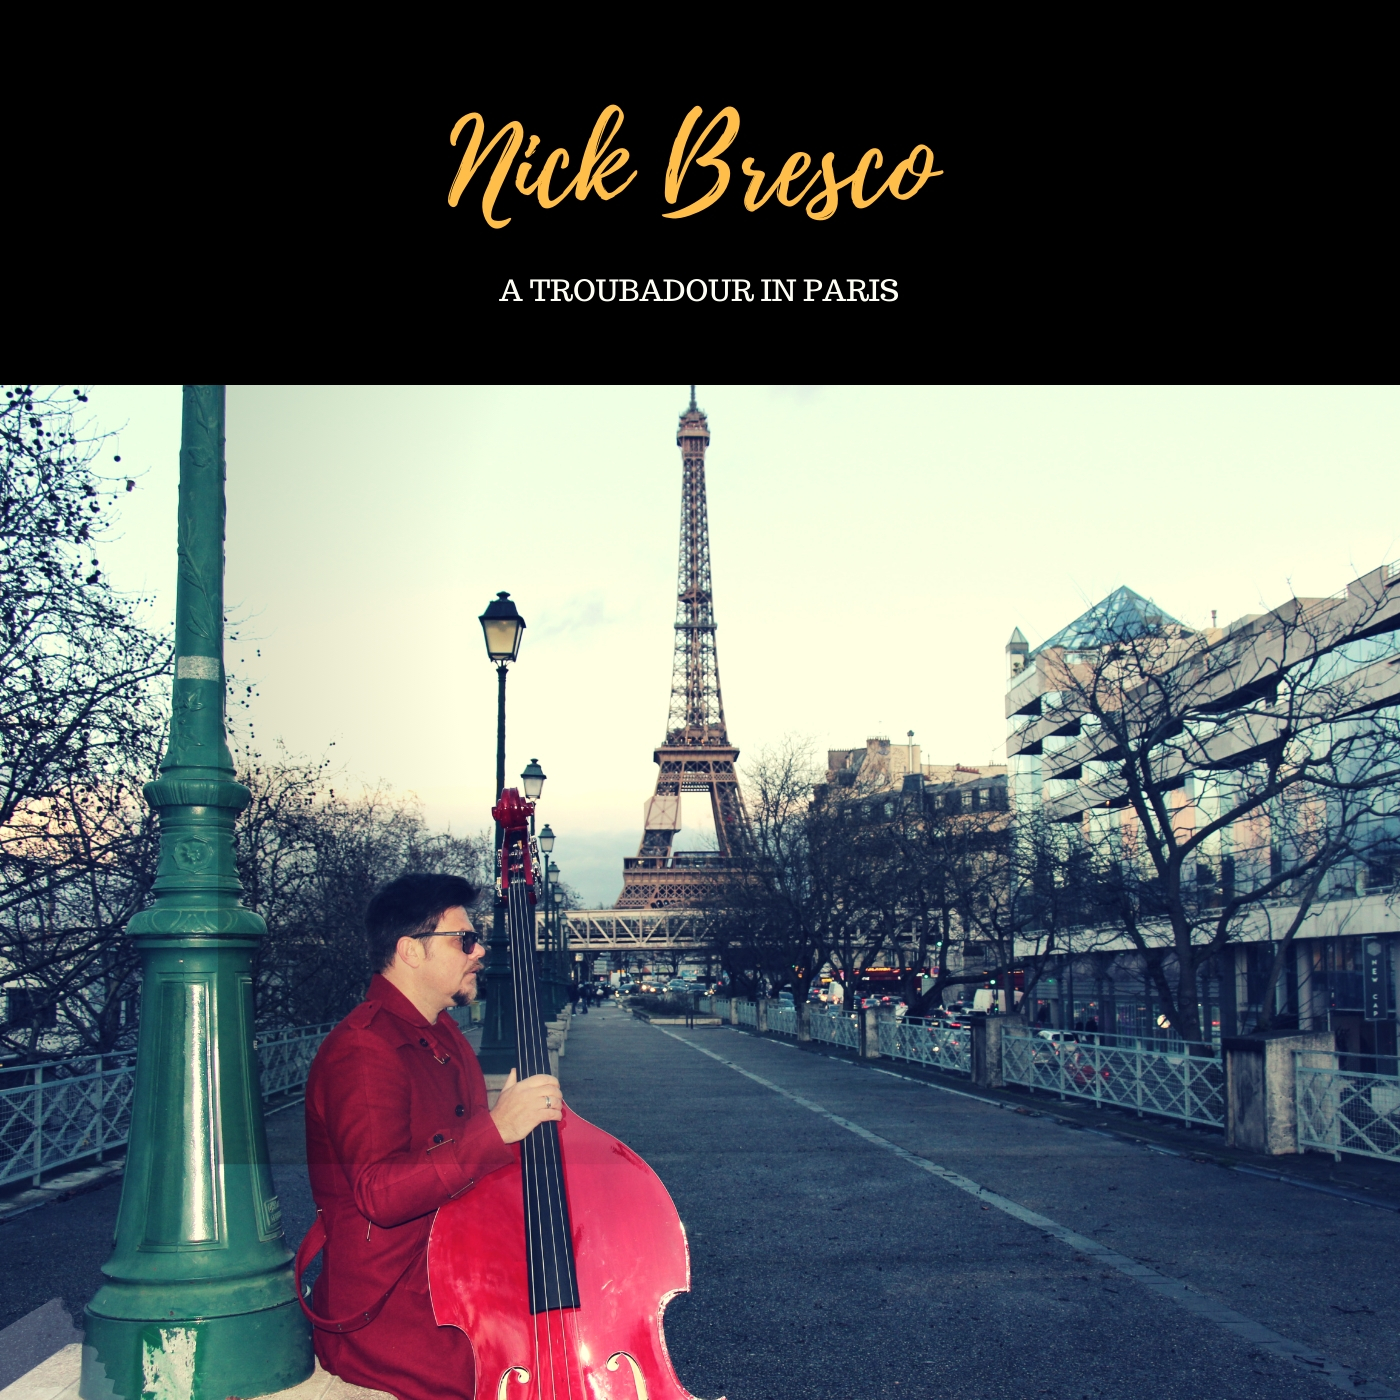 A Troubadour in Paris